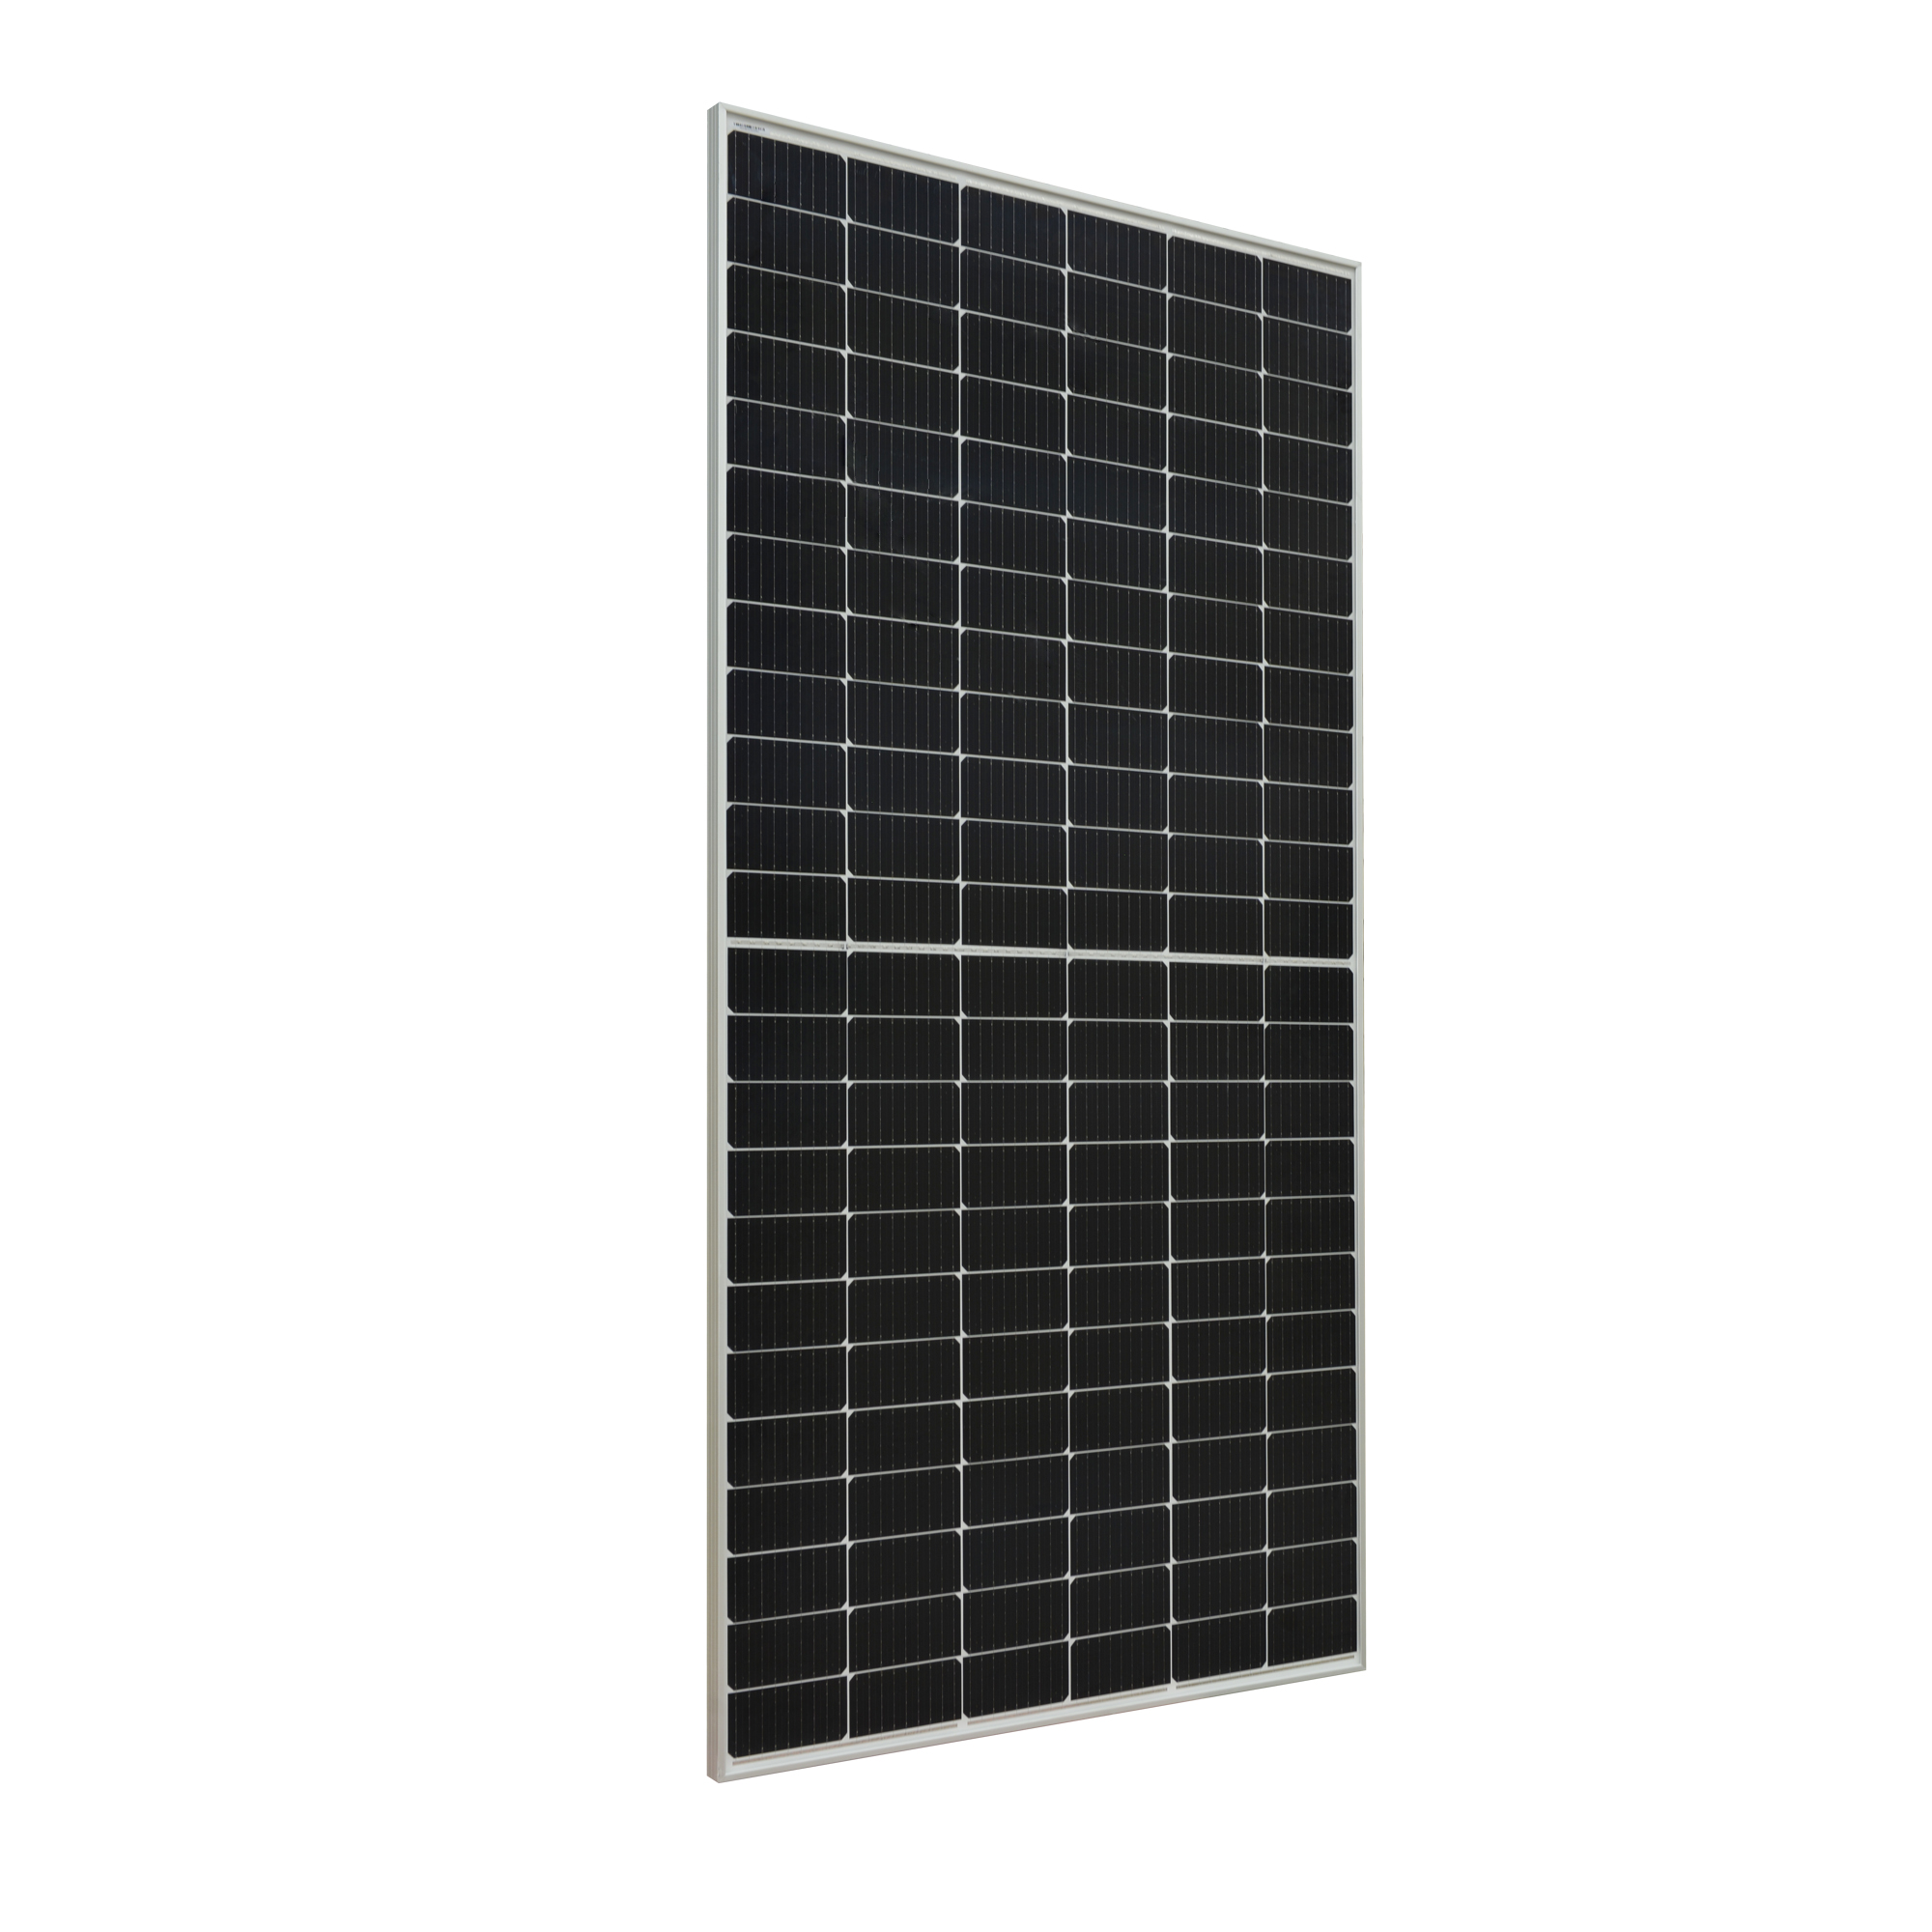 405W لوحة النظام الشمسي خارج الشبكة أحادية البلورية للوحة الطاقة الشمسية الكهروضوئية للمنزل 